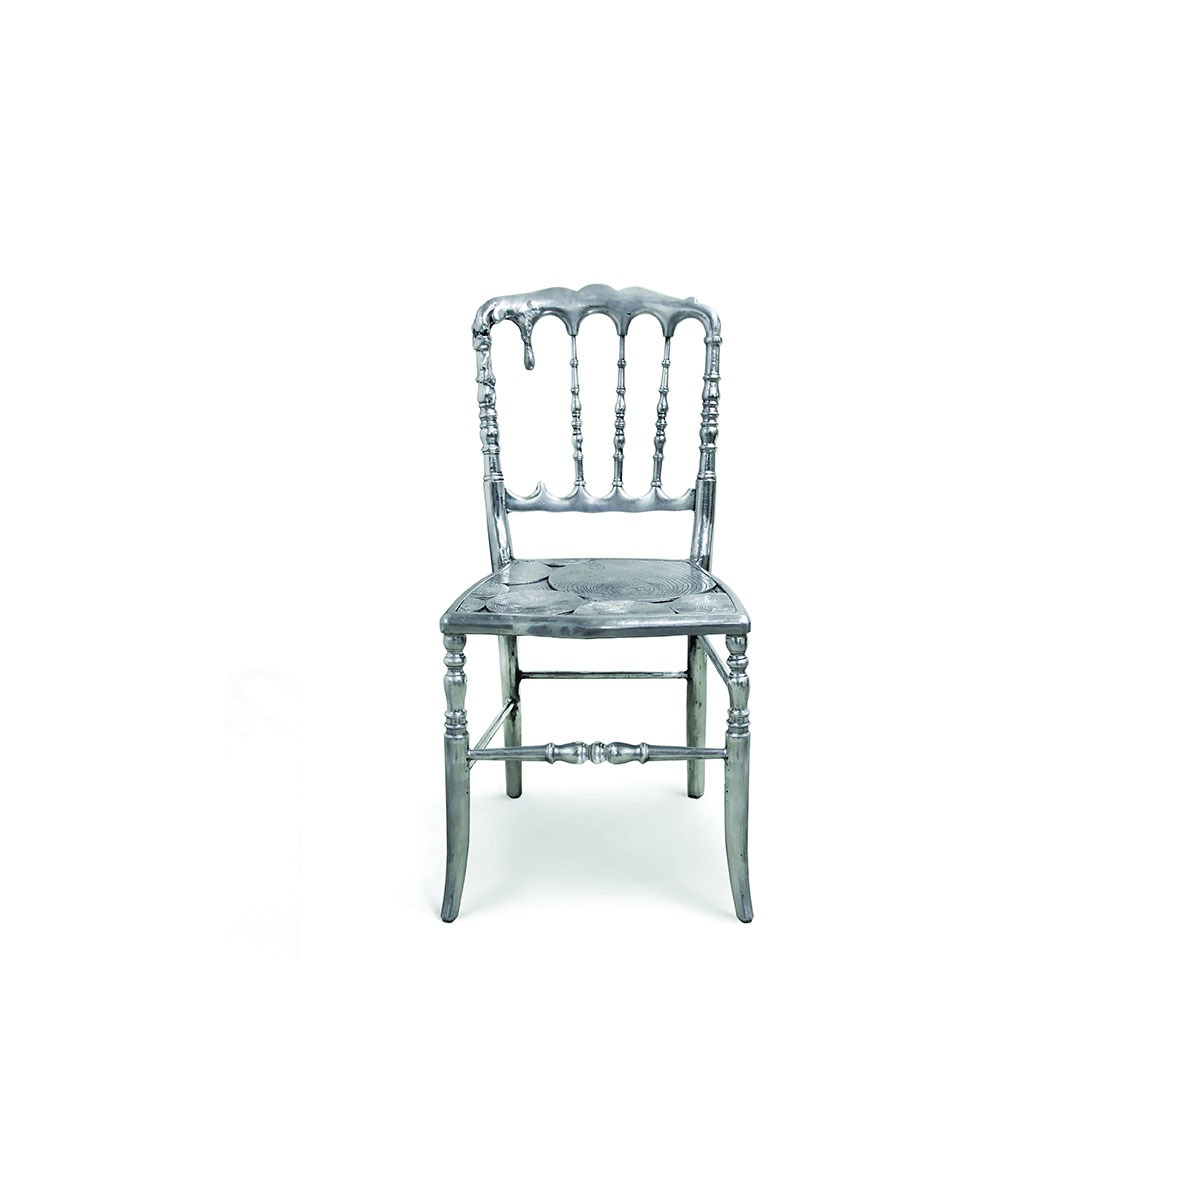 emporium silver chair boca do lobo 01 Emporium Silver Chair